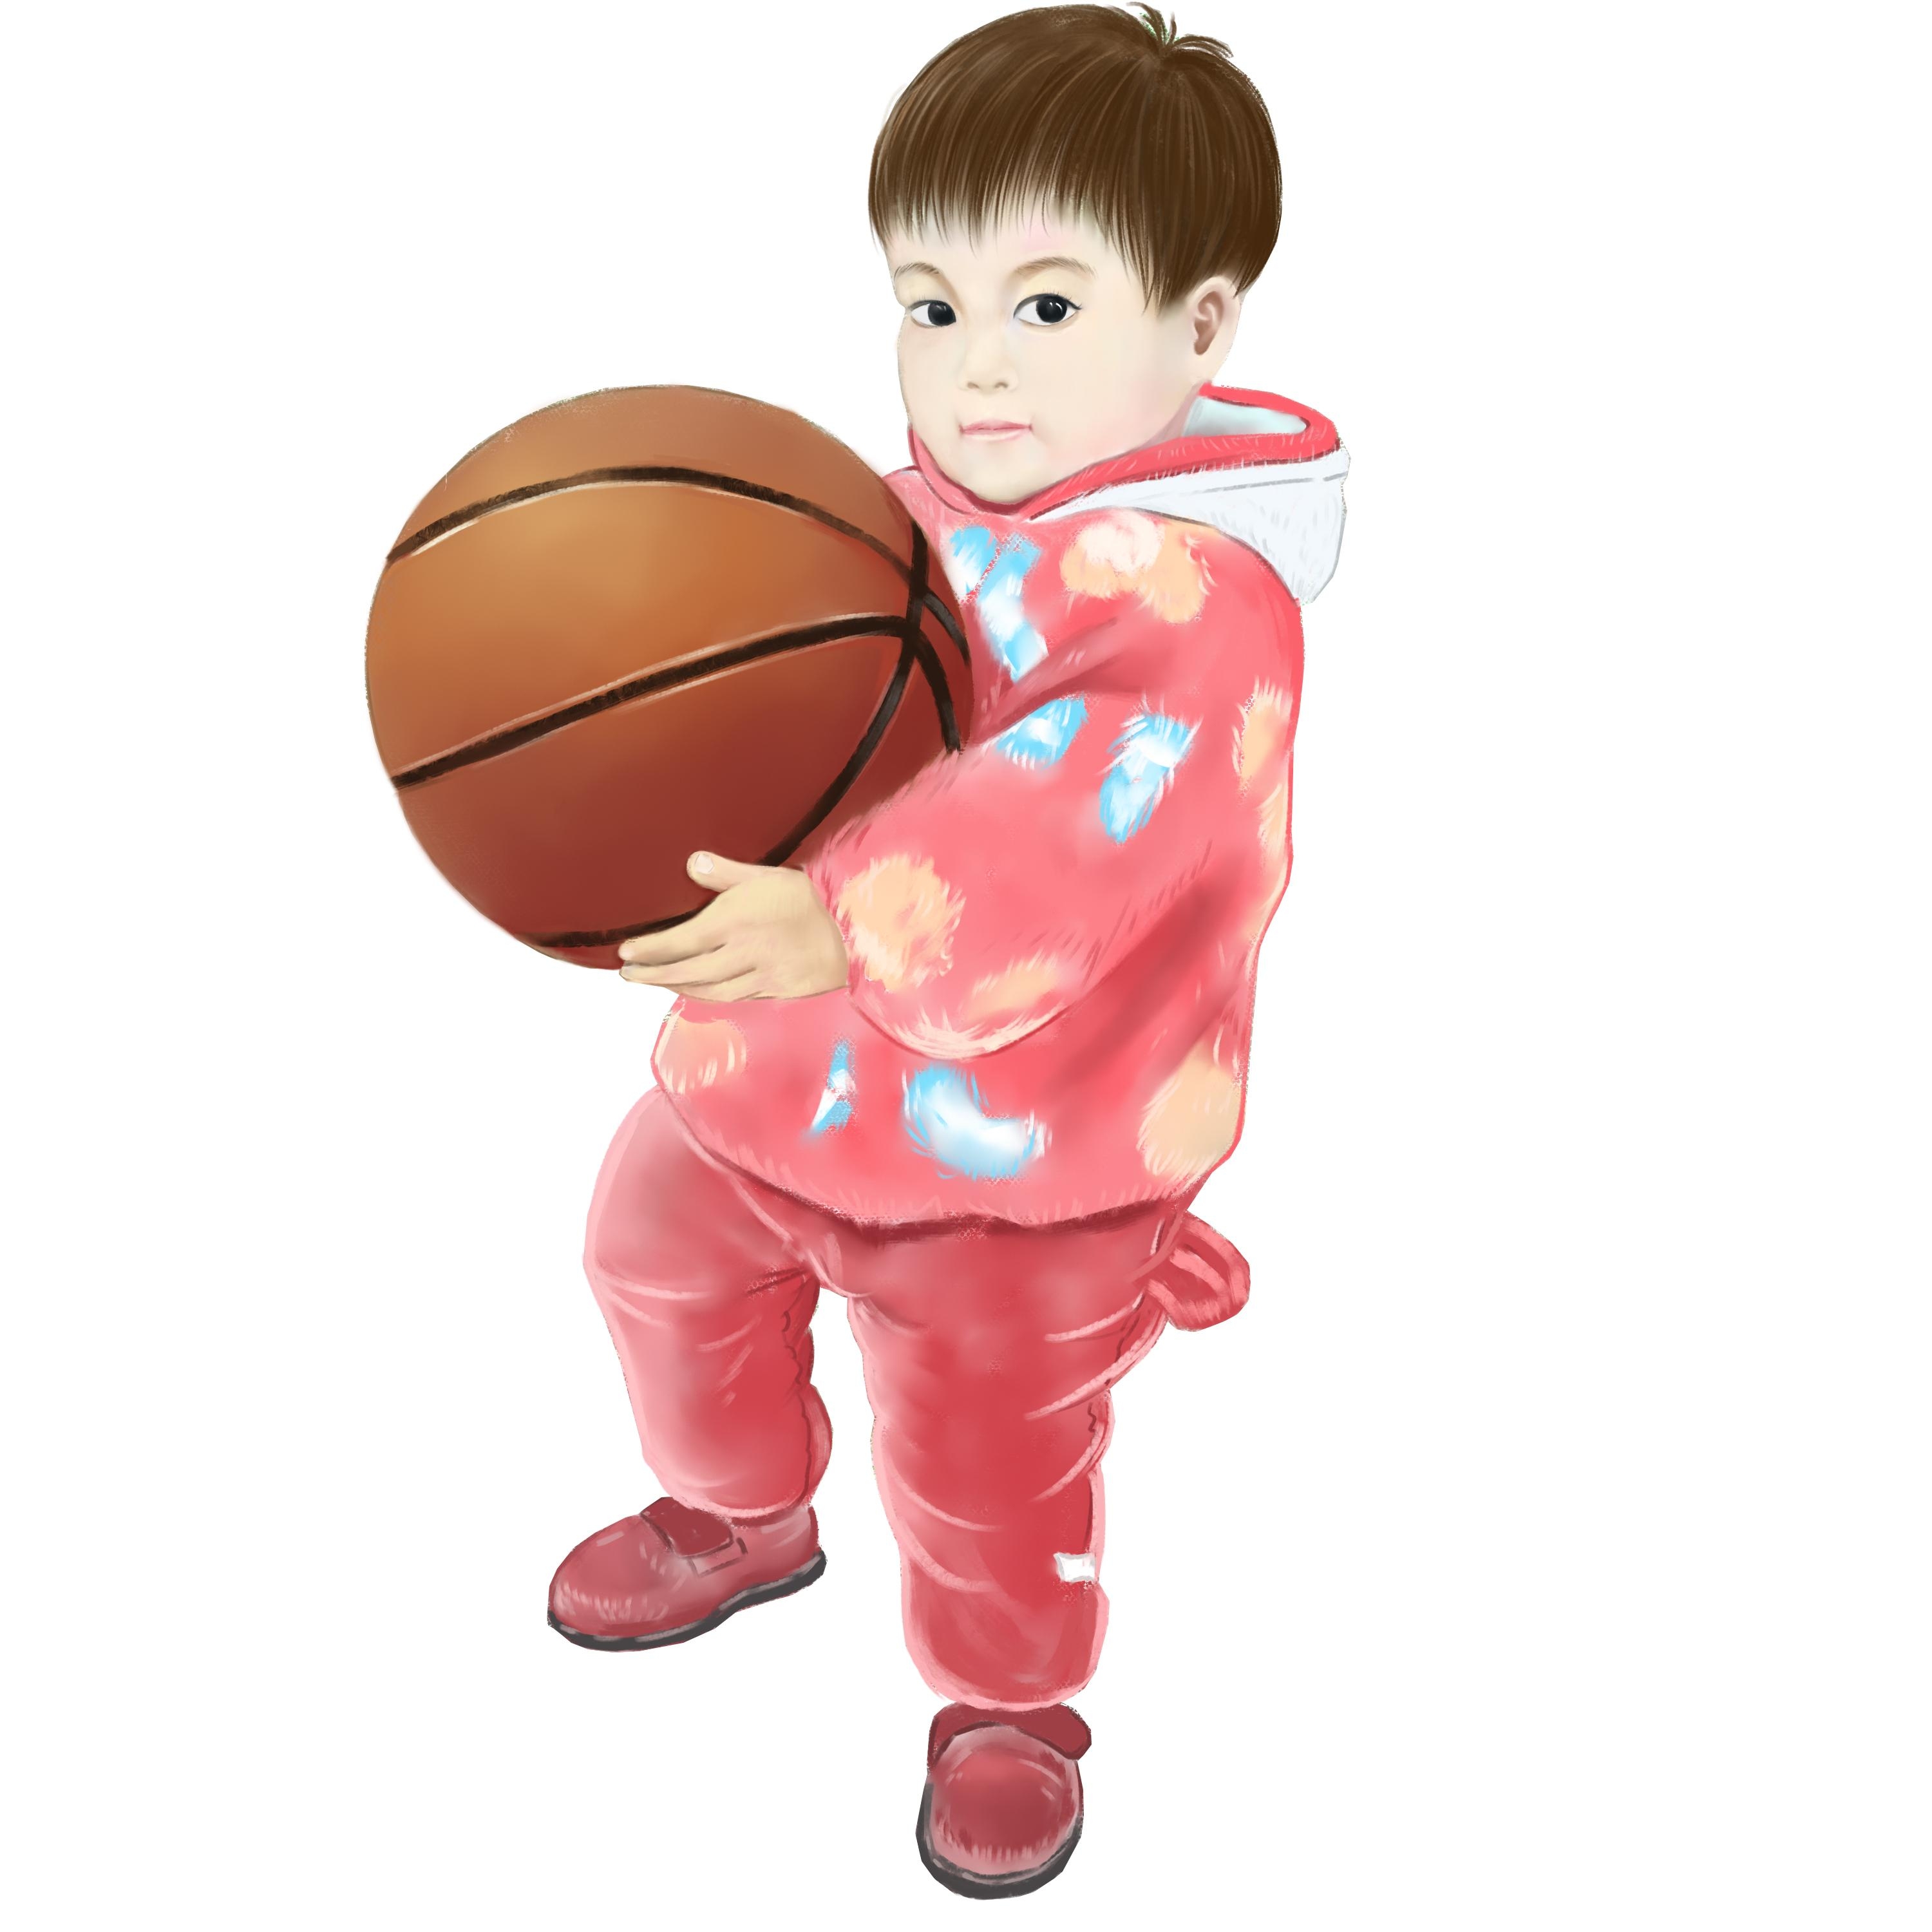 小明的篮球